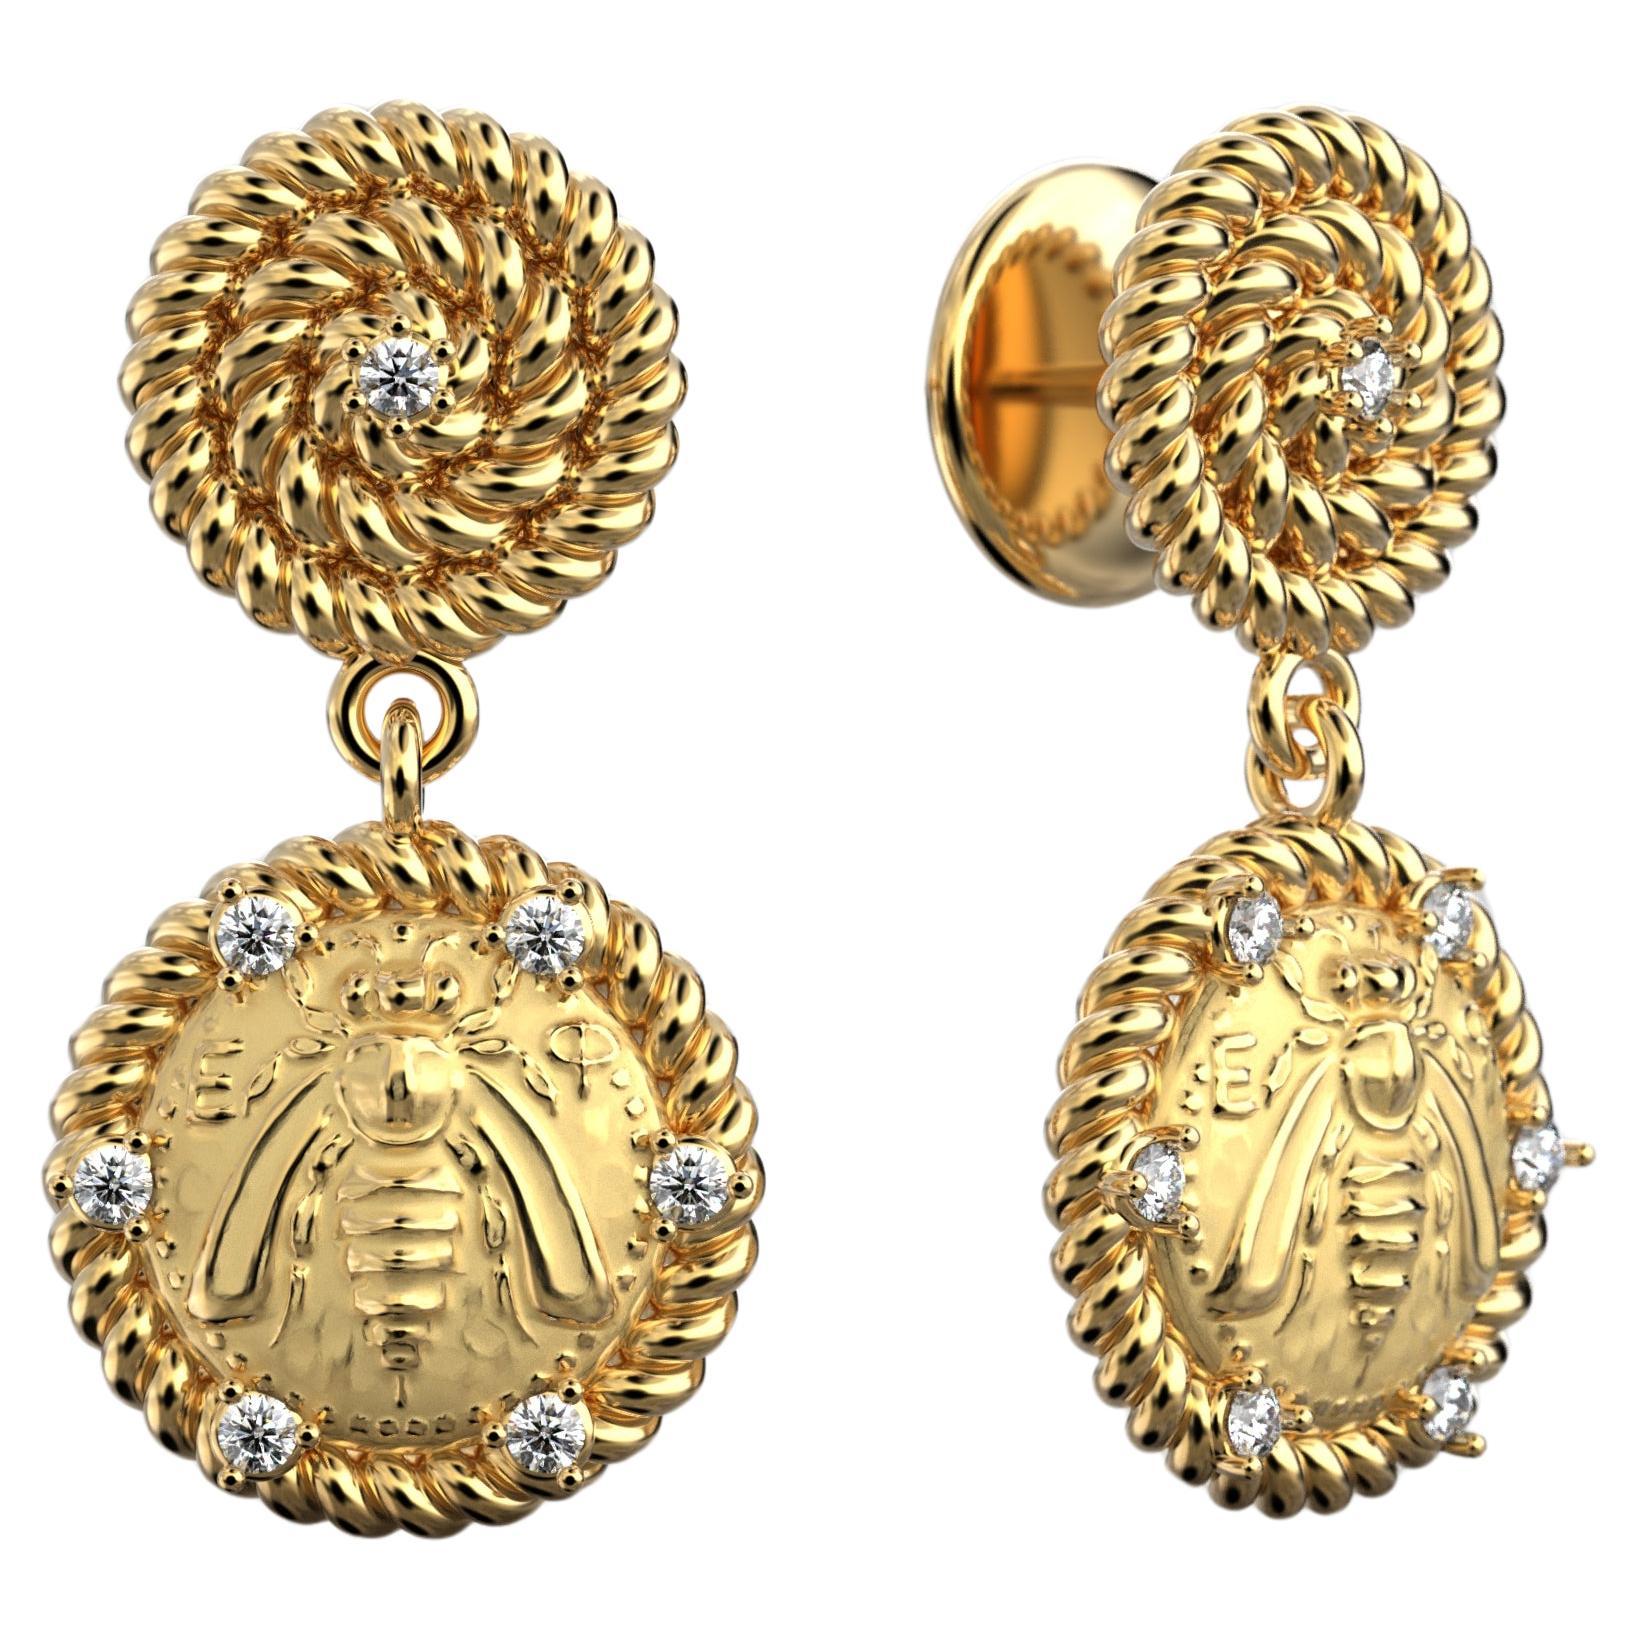 Italian Jewelry | 18k Gold Dangle Earrings With Diamonds | Bee Earrings 